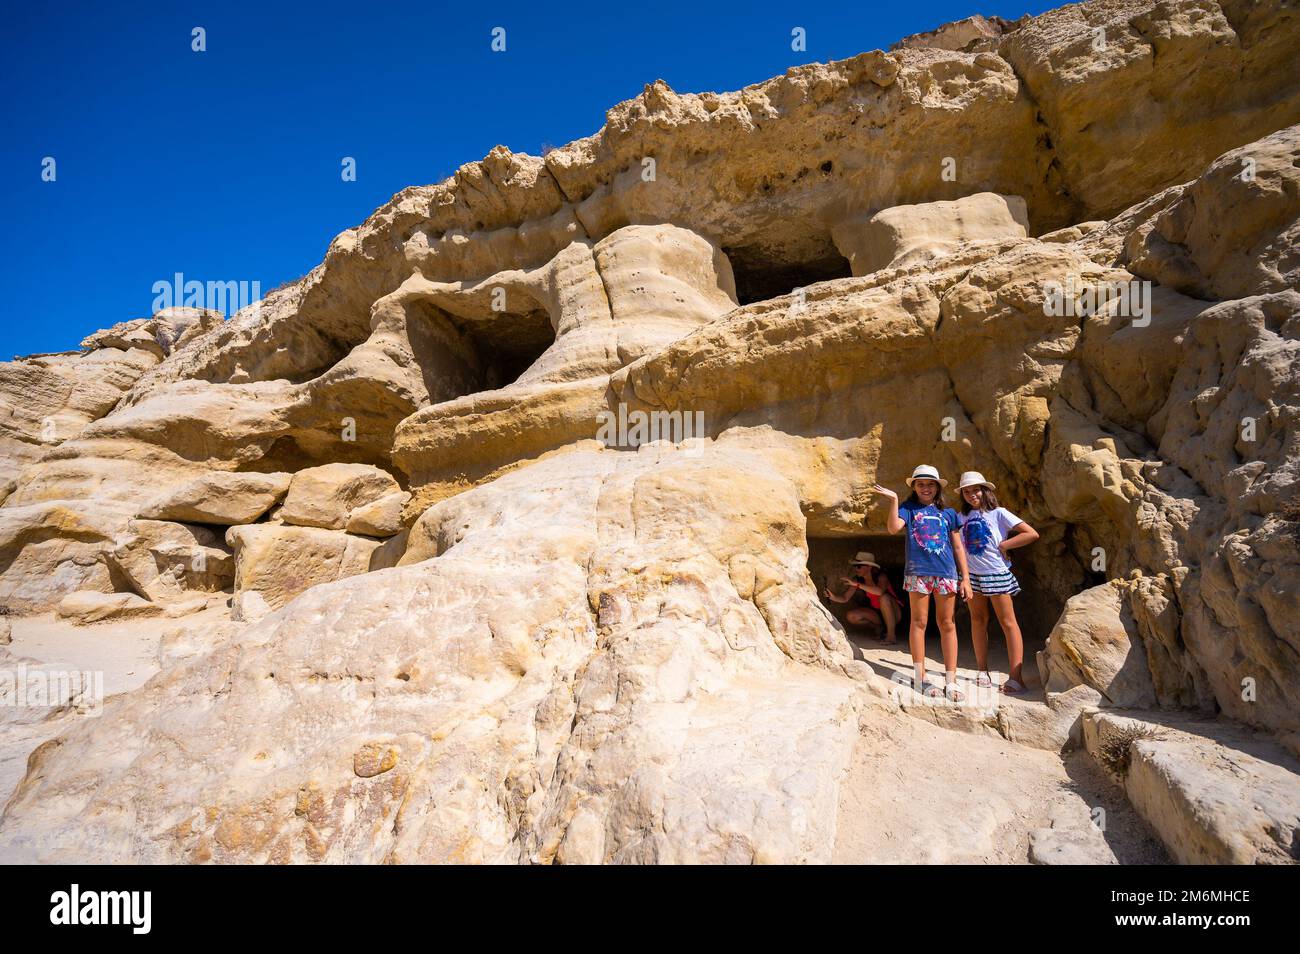 Der berühmte Matala Beach mit seinen Höhlen ist in den 70er Jahren für Hippies bekannt. Blick auf Felshöhlen, einst ein römischer Friedhof, am berühmten griechischen Strand Matala, Kreta, Griechenland. Stockfoto